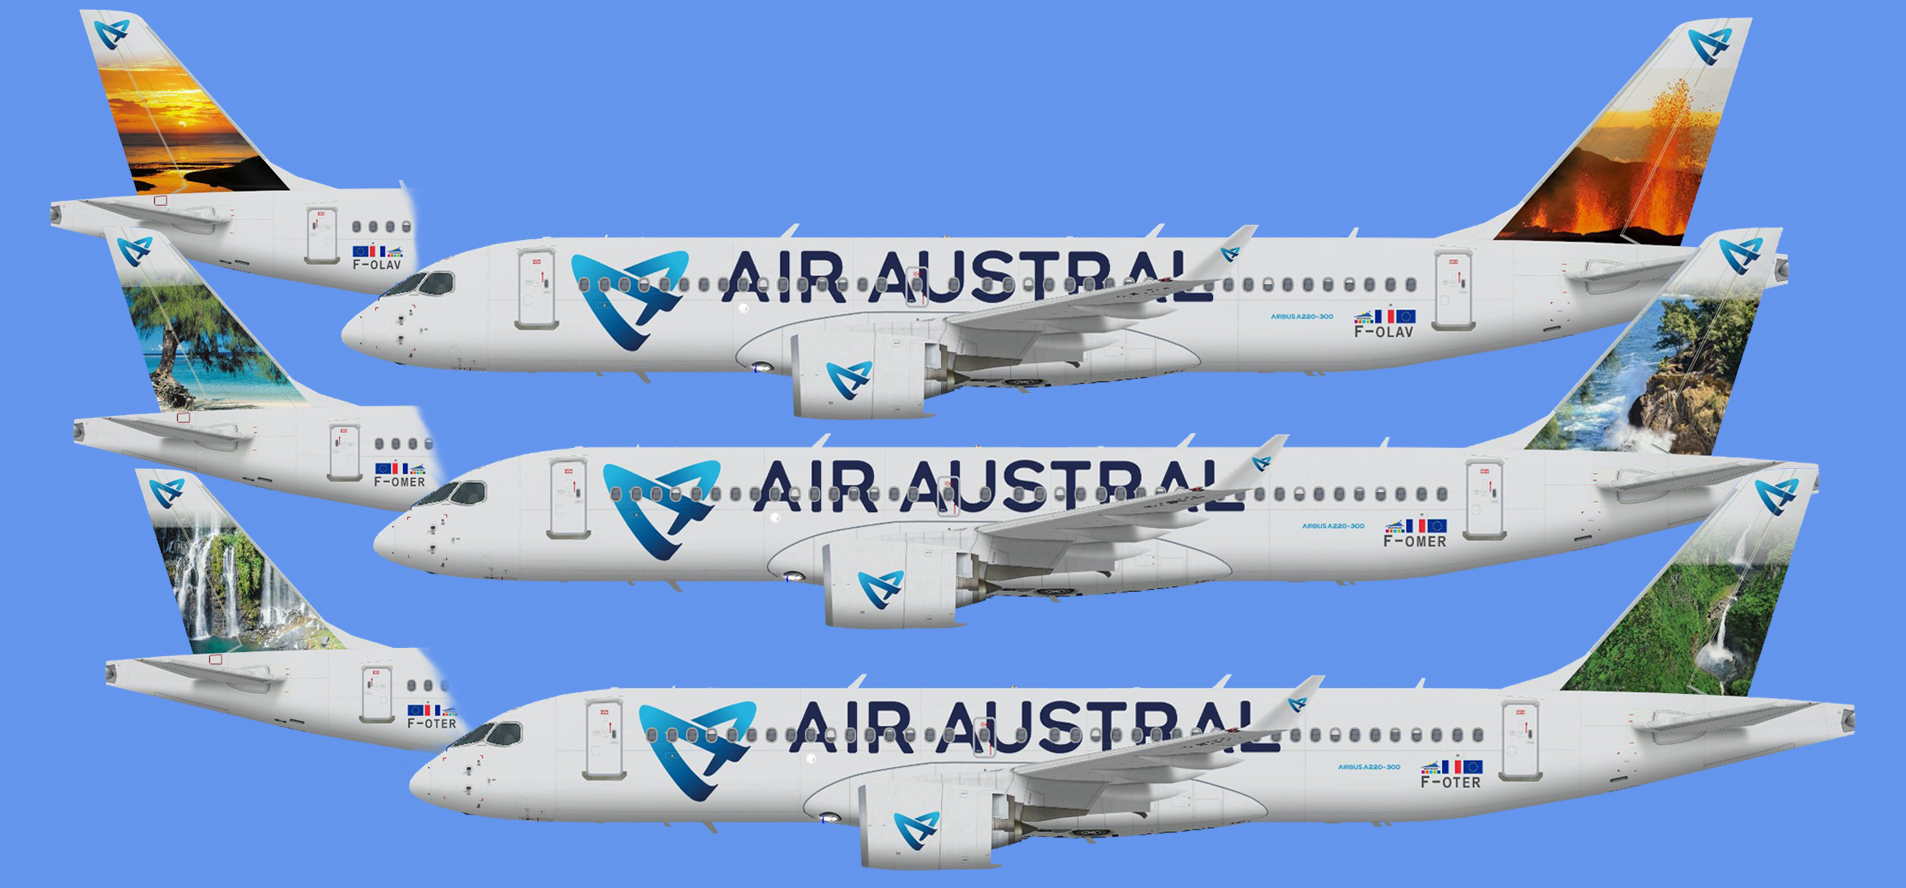 Air Austral Airbus A220-300 (FSPXAI)